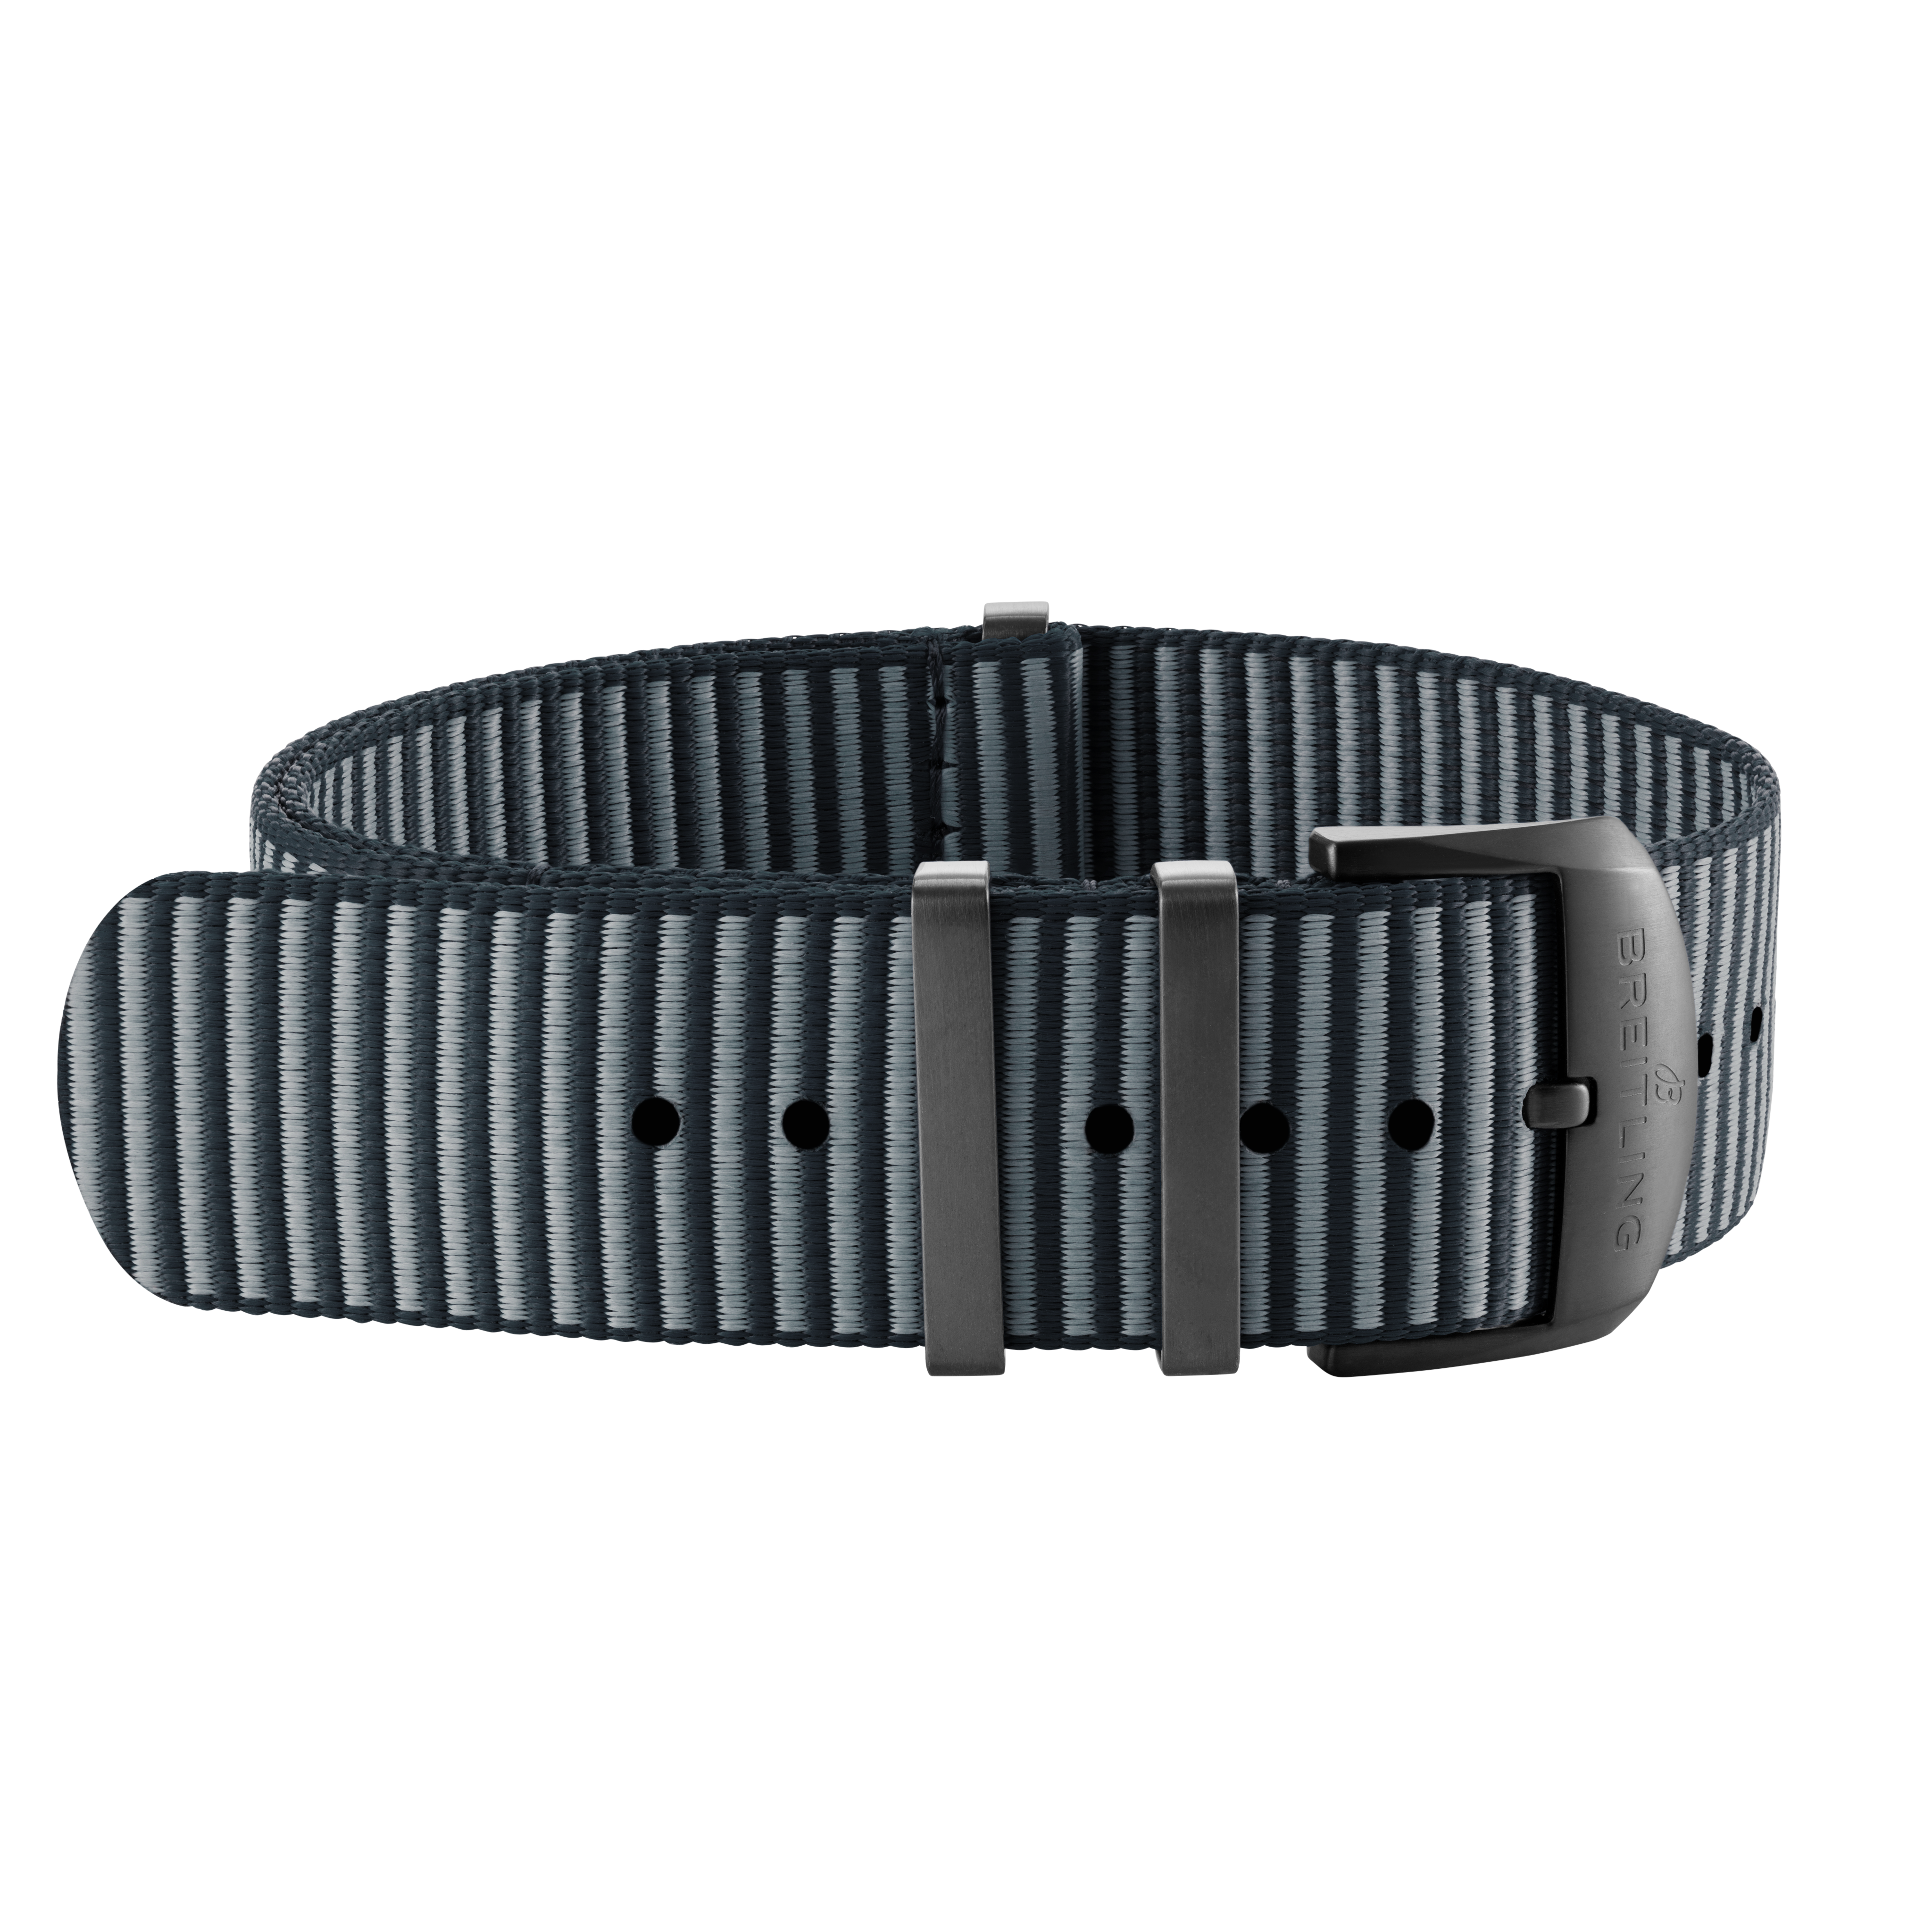 Bracelet une pièce Outerknown en fil ECONYL® gris (avec passants en acier inoxydable avec revêtement DLC) - 22 mm